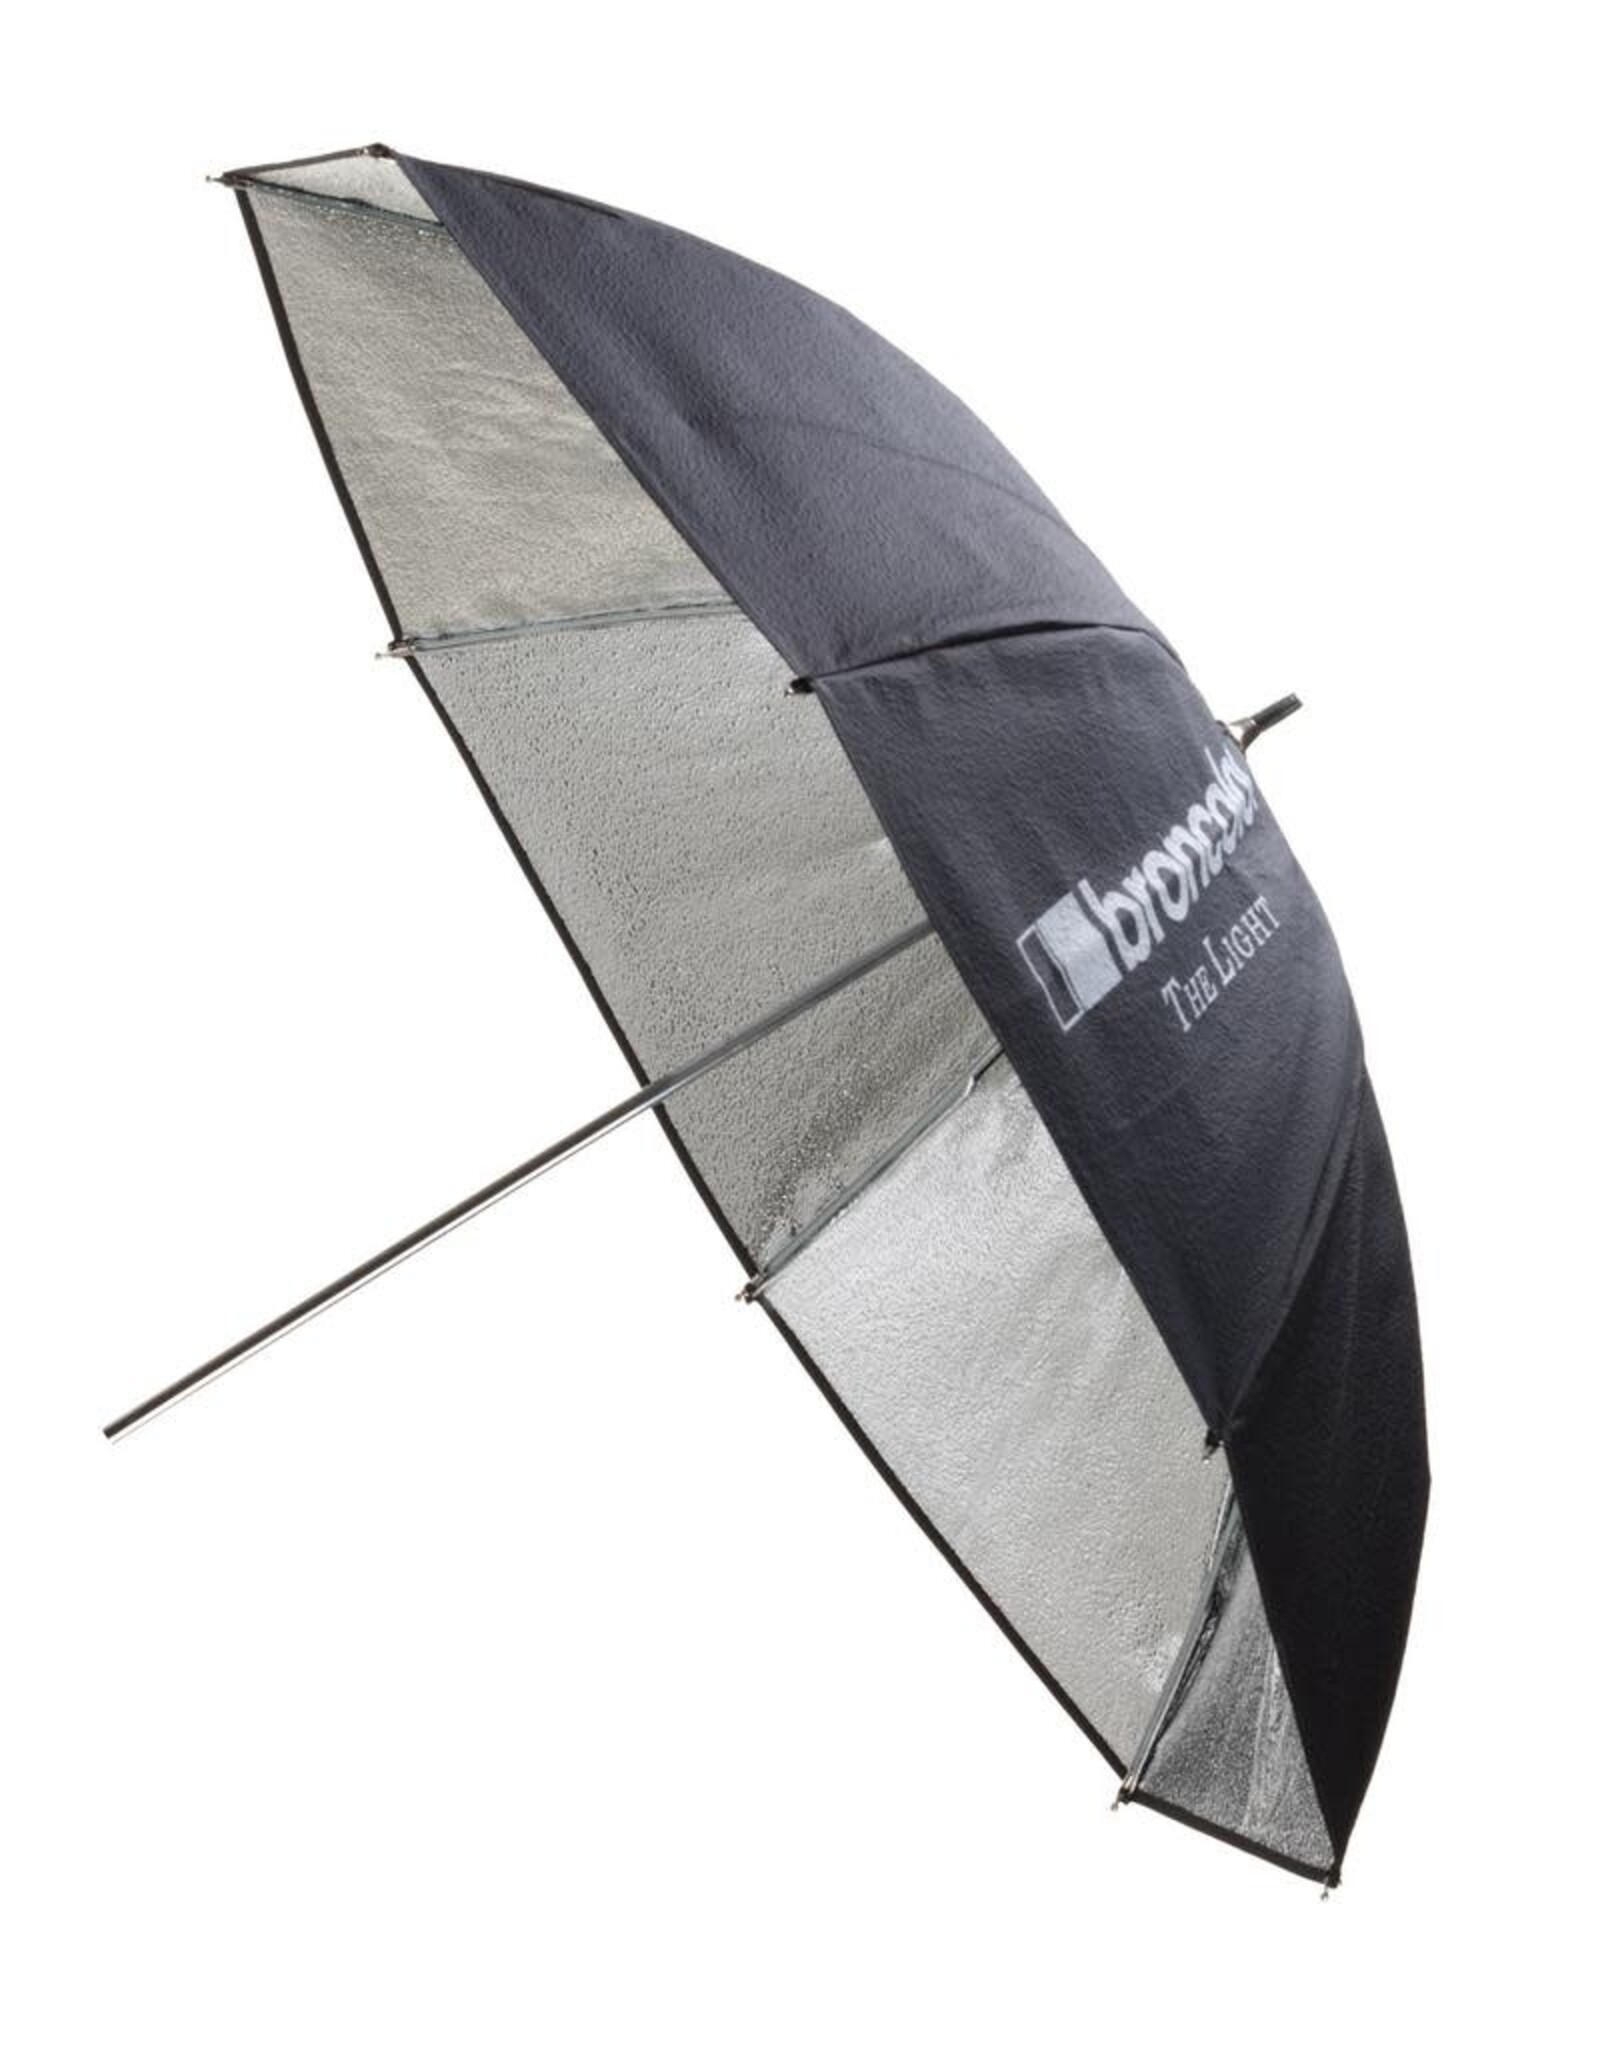 Broncolor Broncolor Umbrella Silver/Black 85cm (34in)